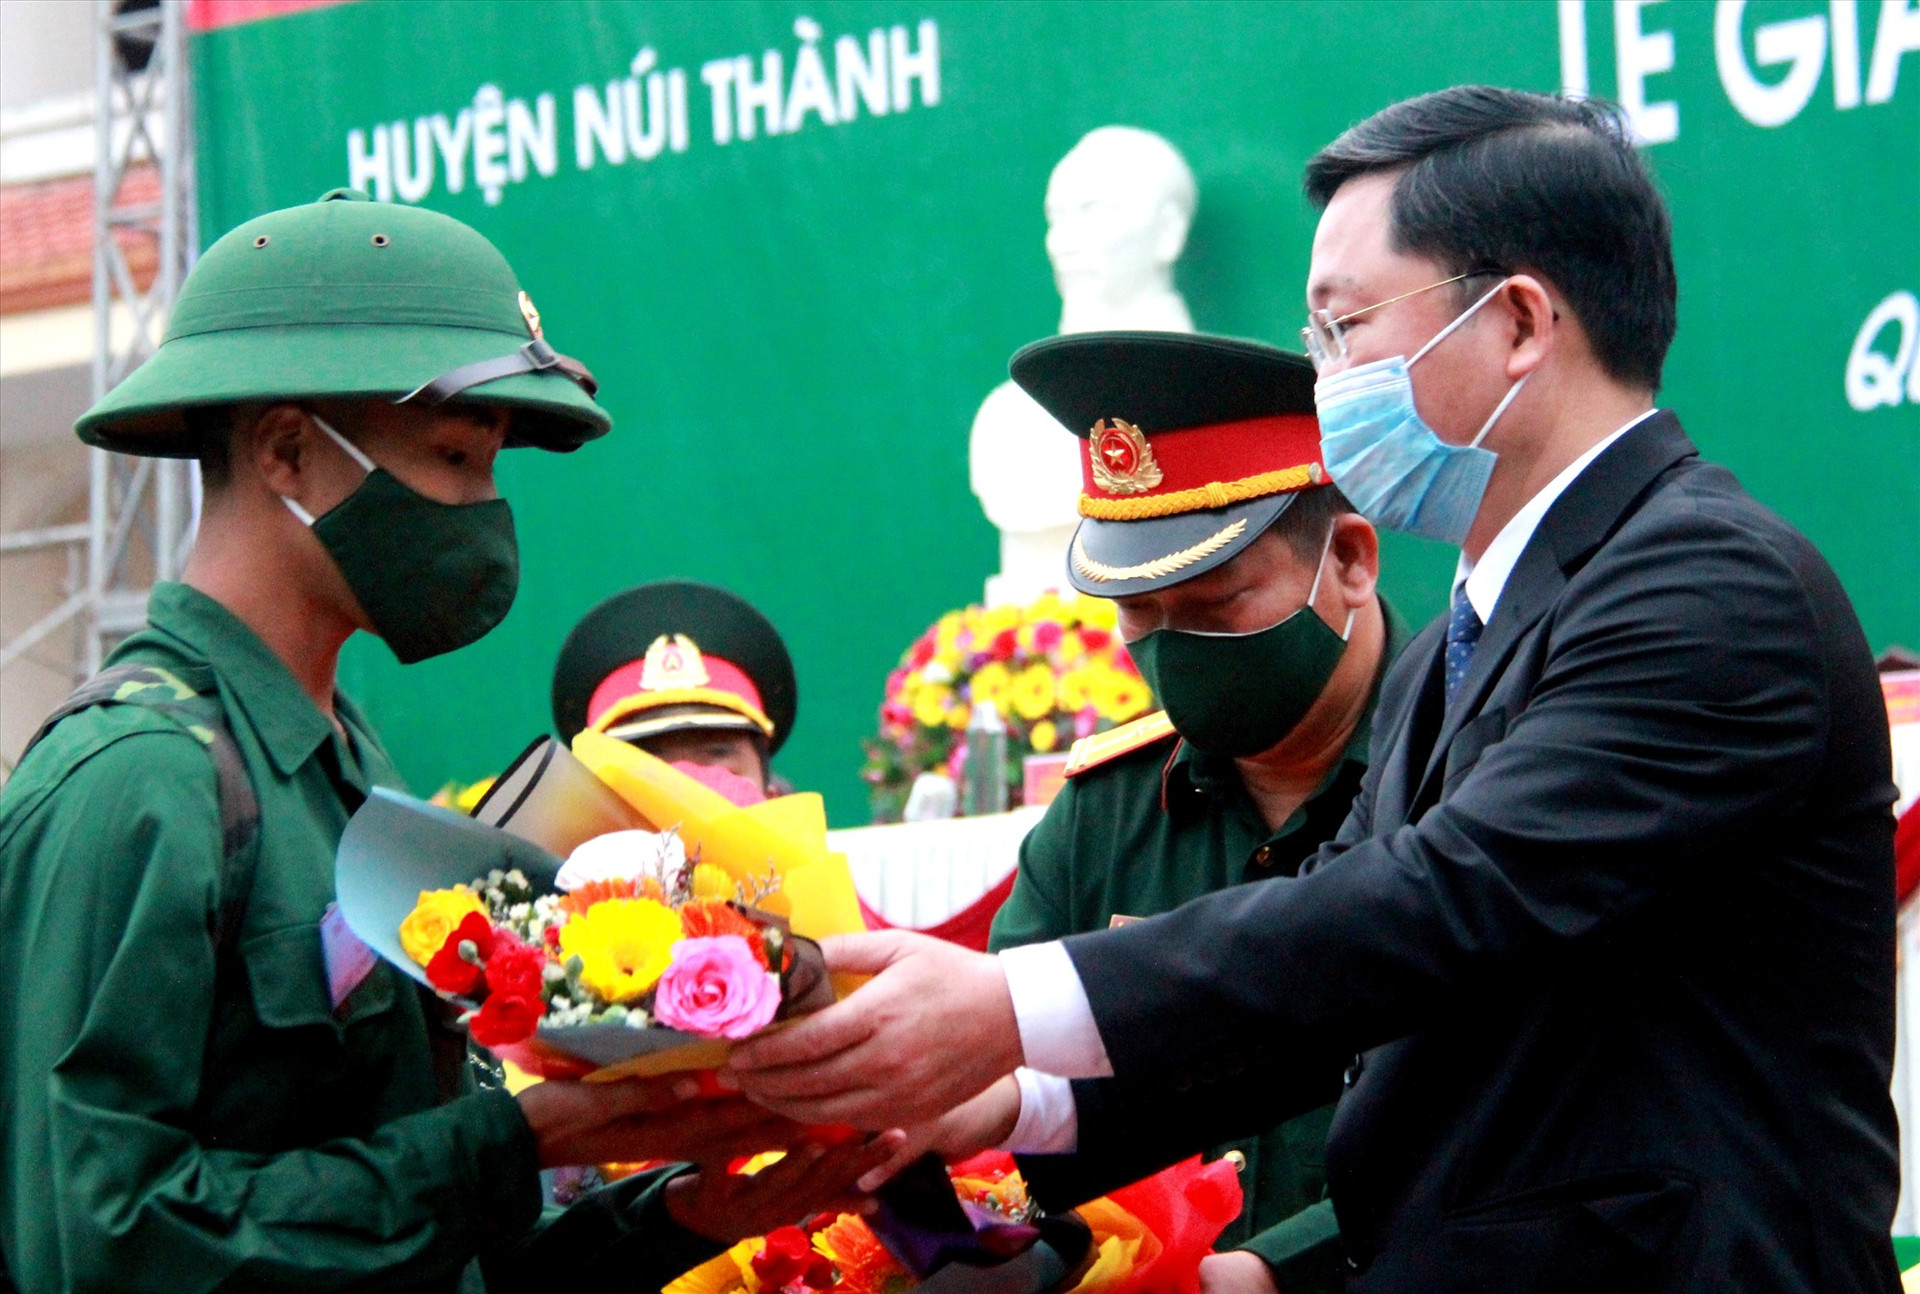 Chủ tịch UBND tỉnh Lê Trí Thanh tặng hoa động viên các chiến sĩ huuyện Núi Thành. Ảnh: ALĂNG NGƯỚC